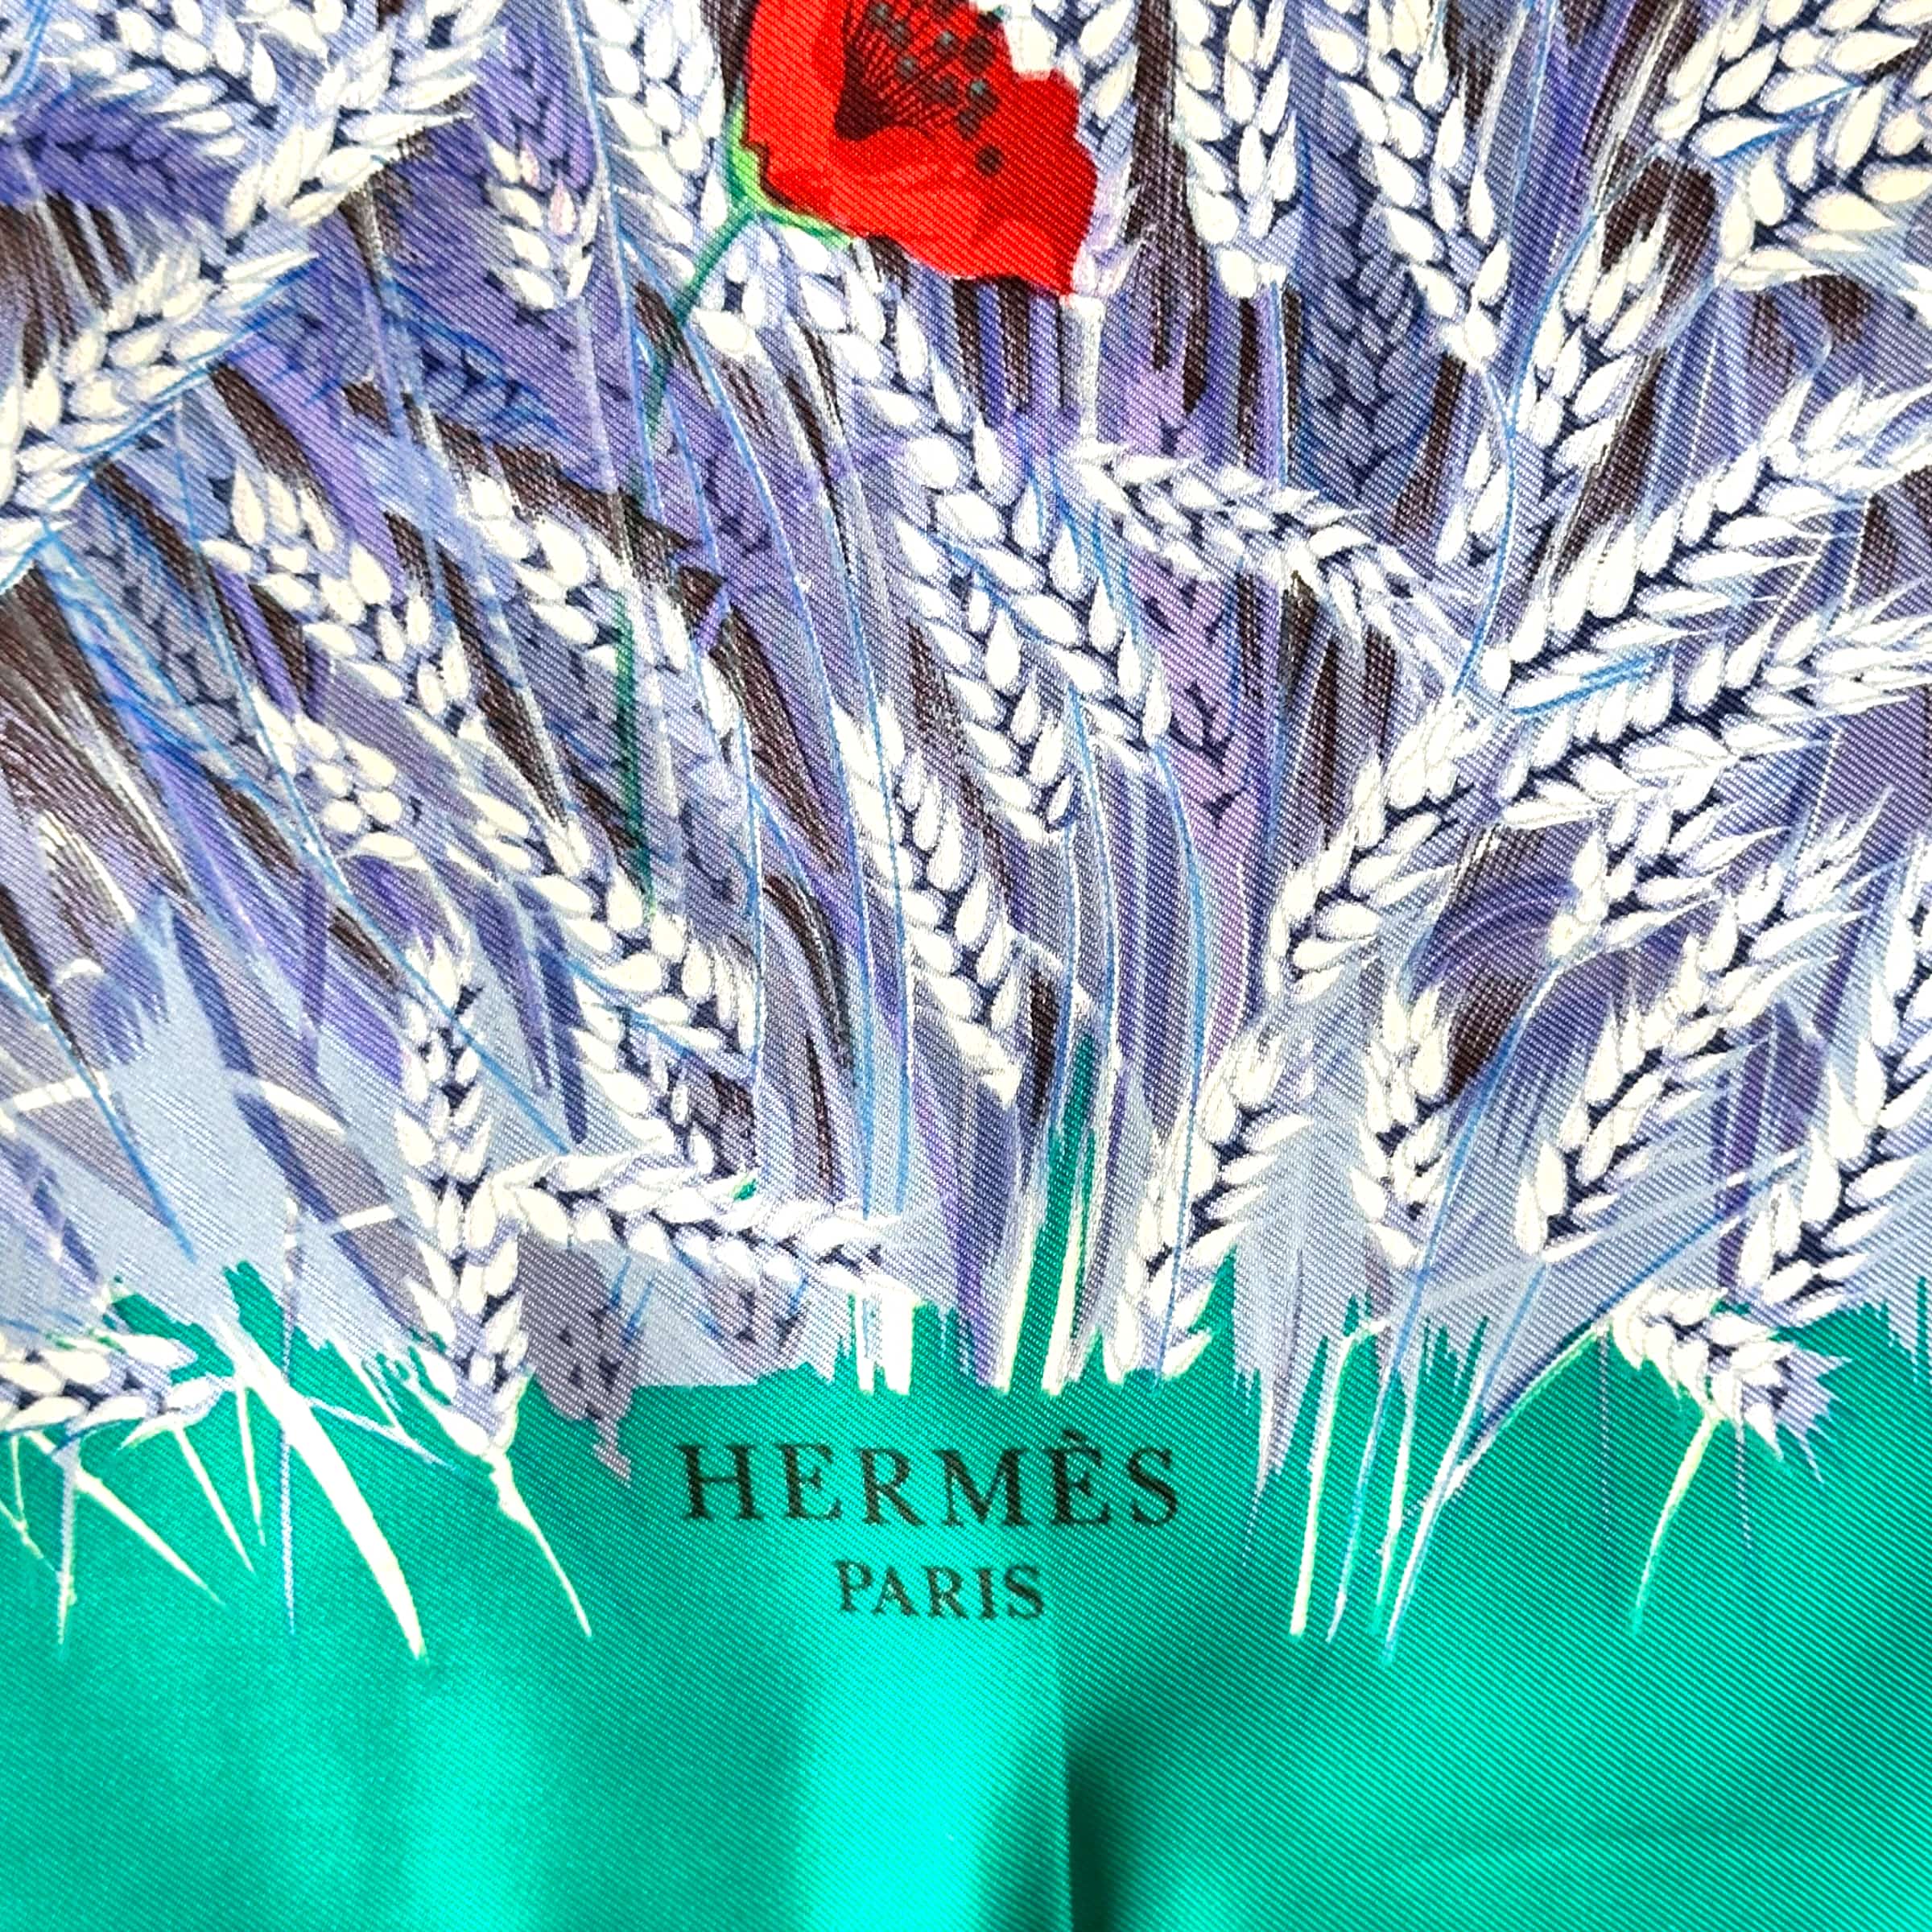 le logo Hermes Paris en bas du foulard